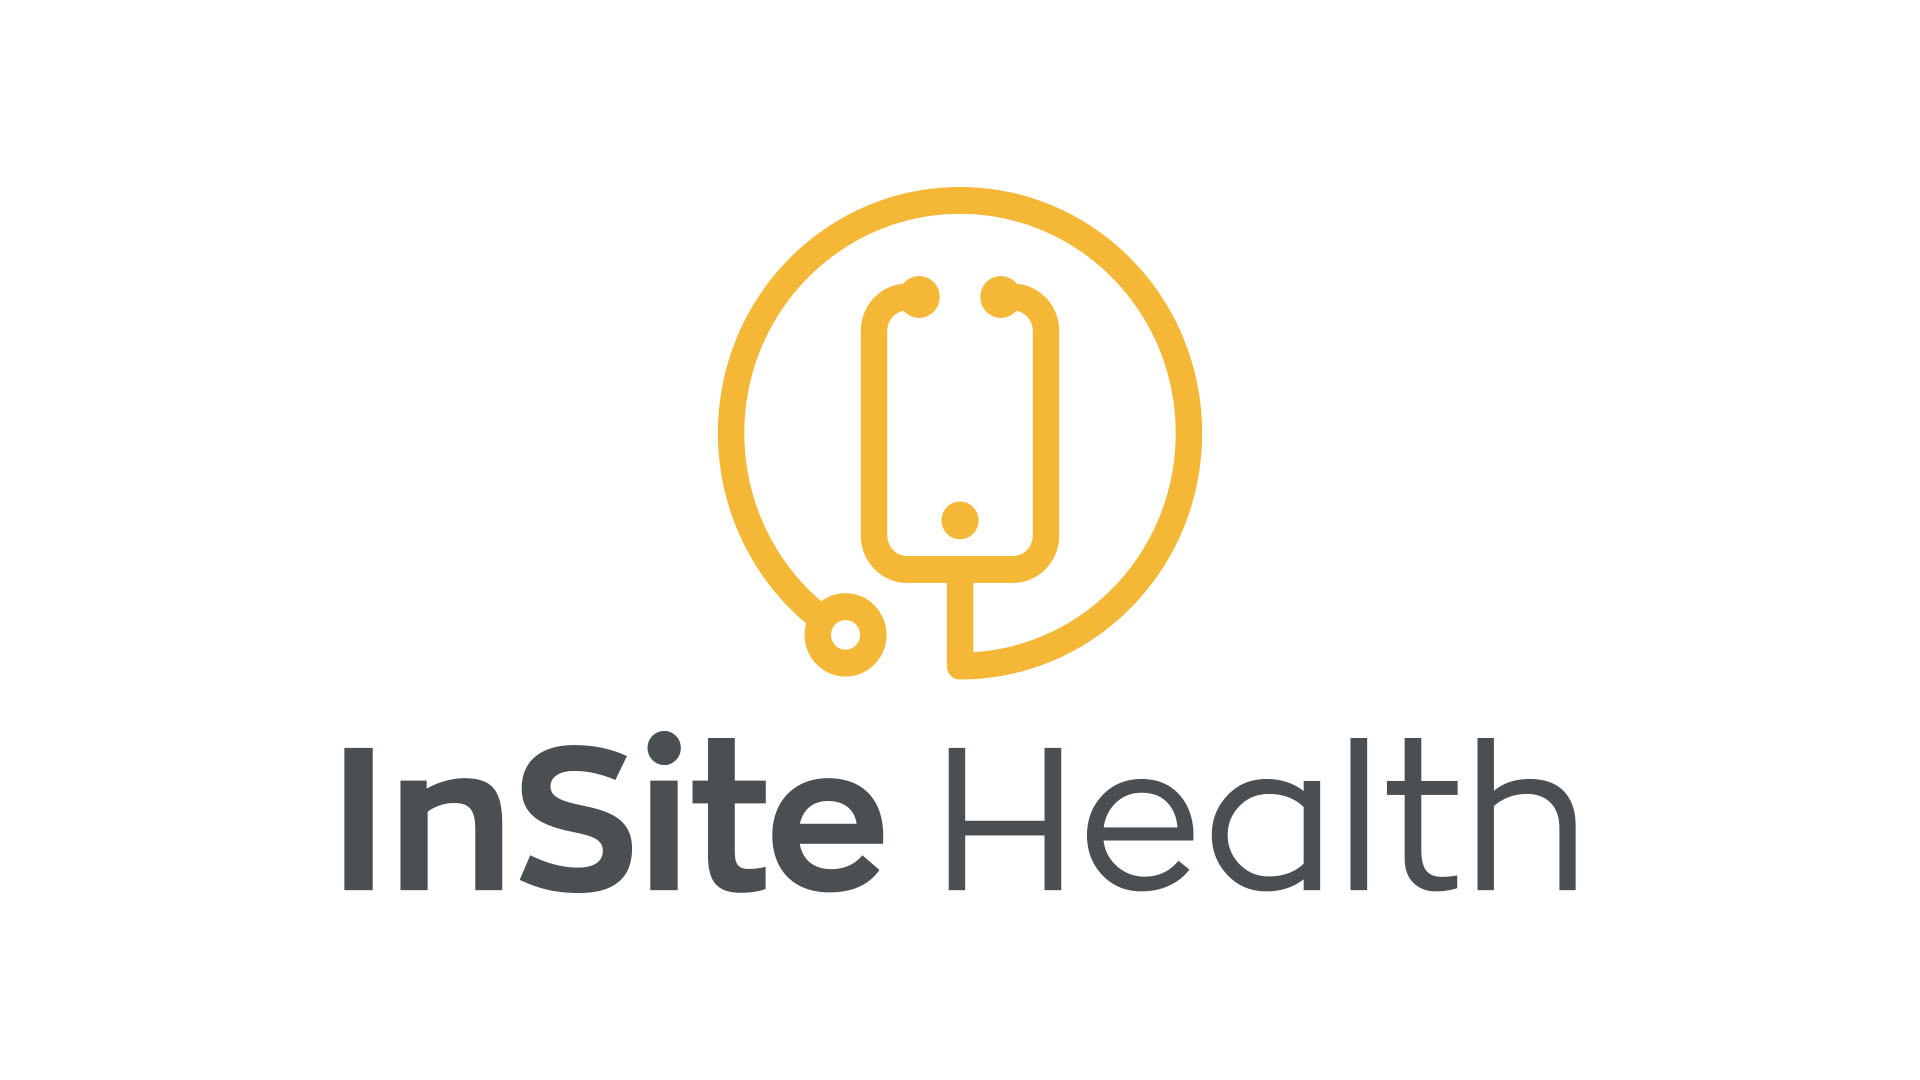 insite health logo